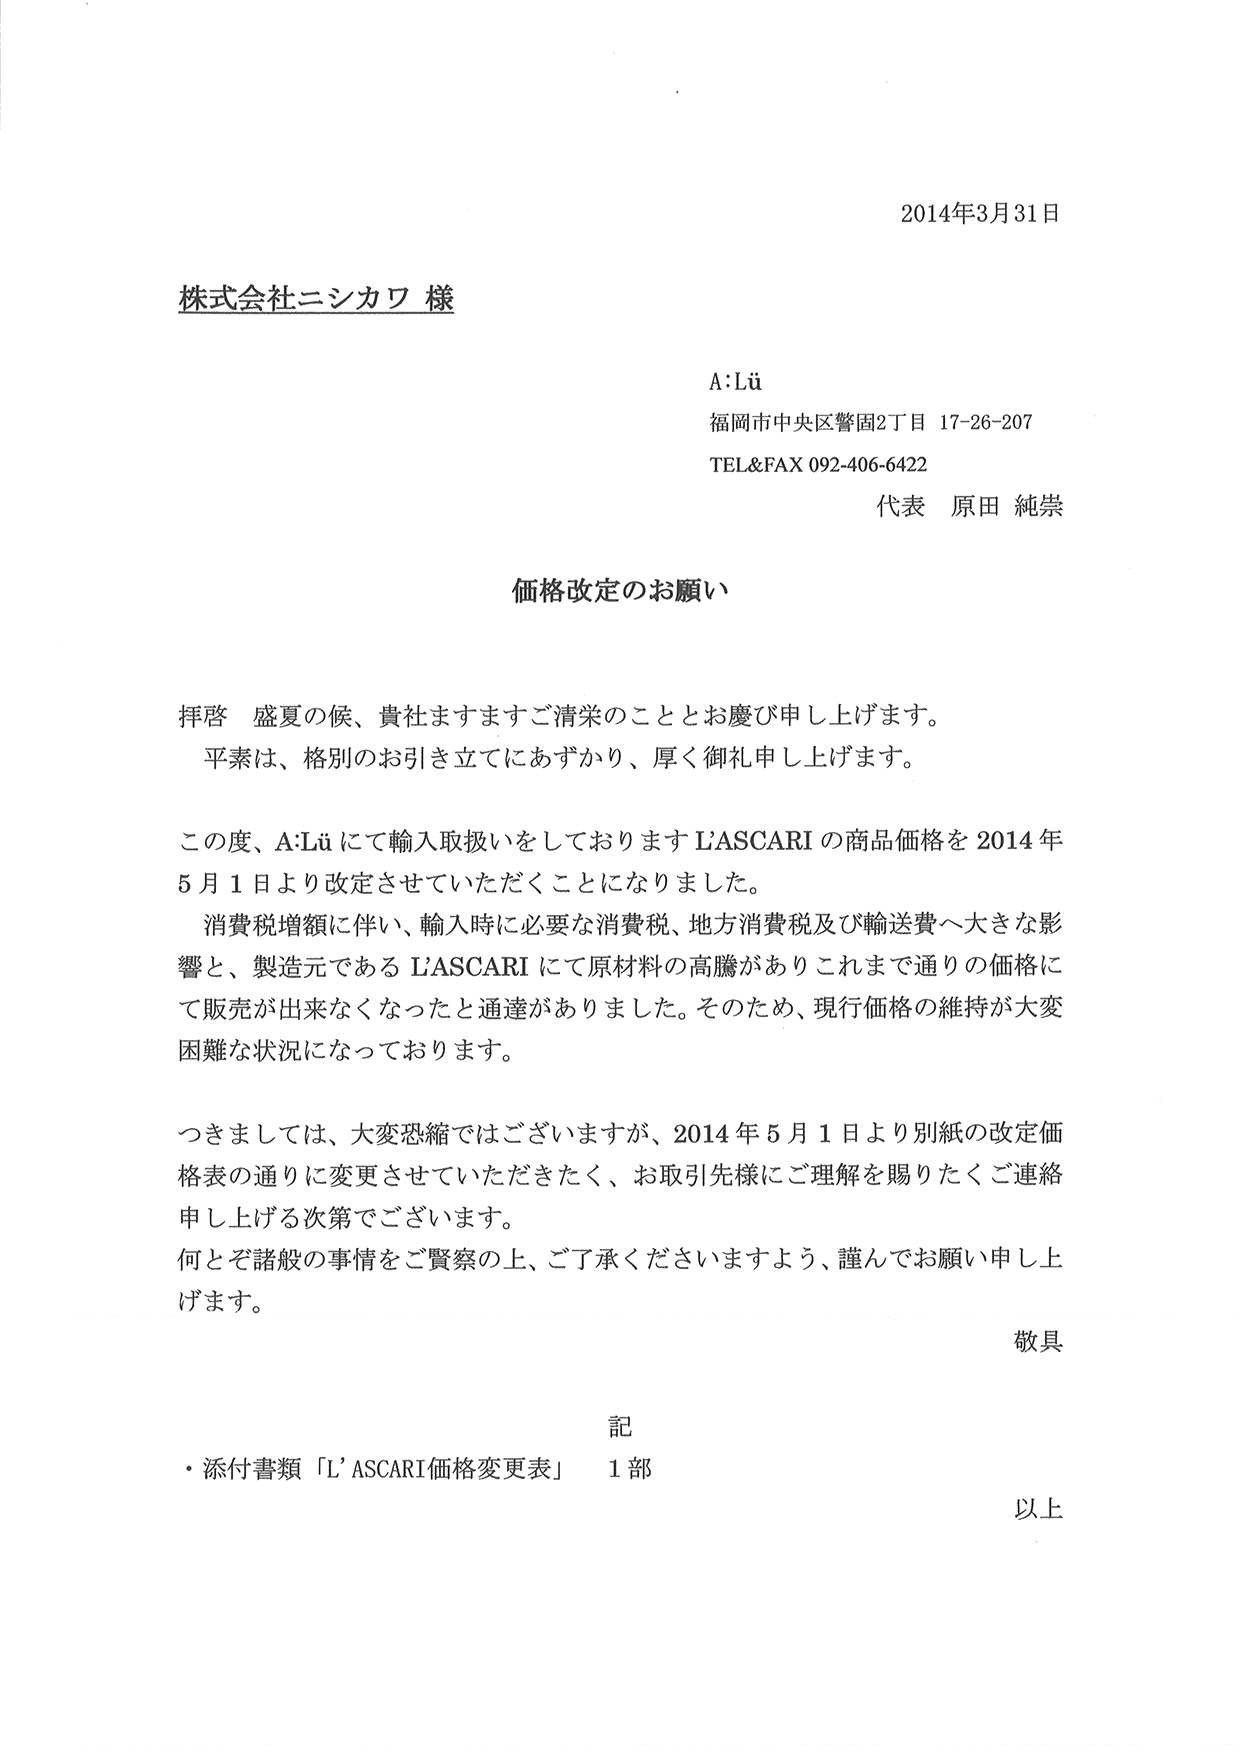 ワールドクリエイト 価格誤表記 販売中止のお知らせ 株式会社ニシカワ Nishikawa Co Ltd